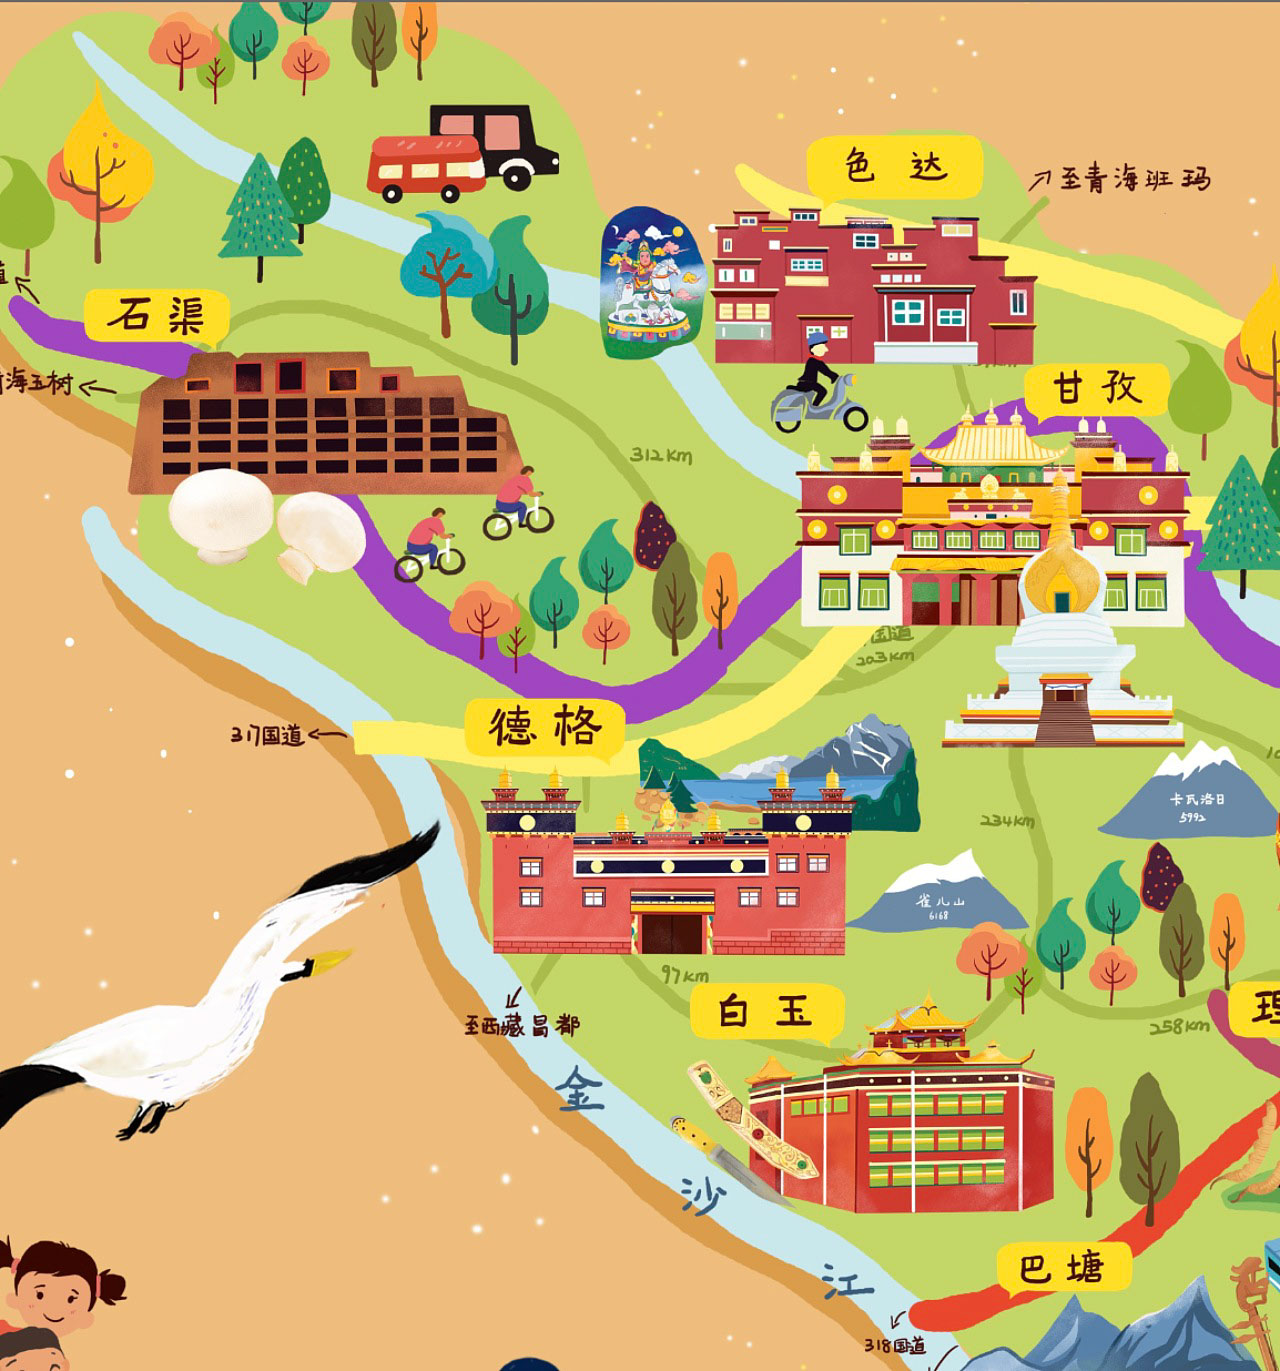 化州语音导览让旅游更有趣